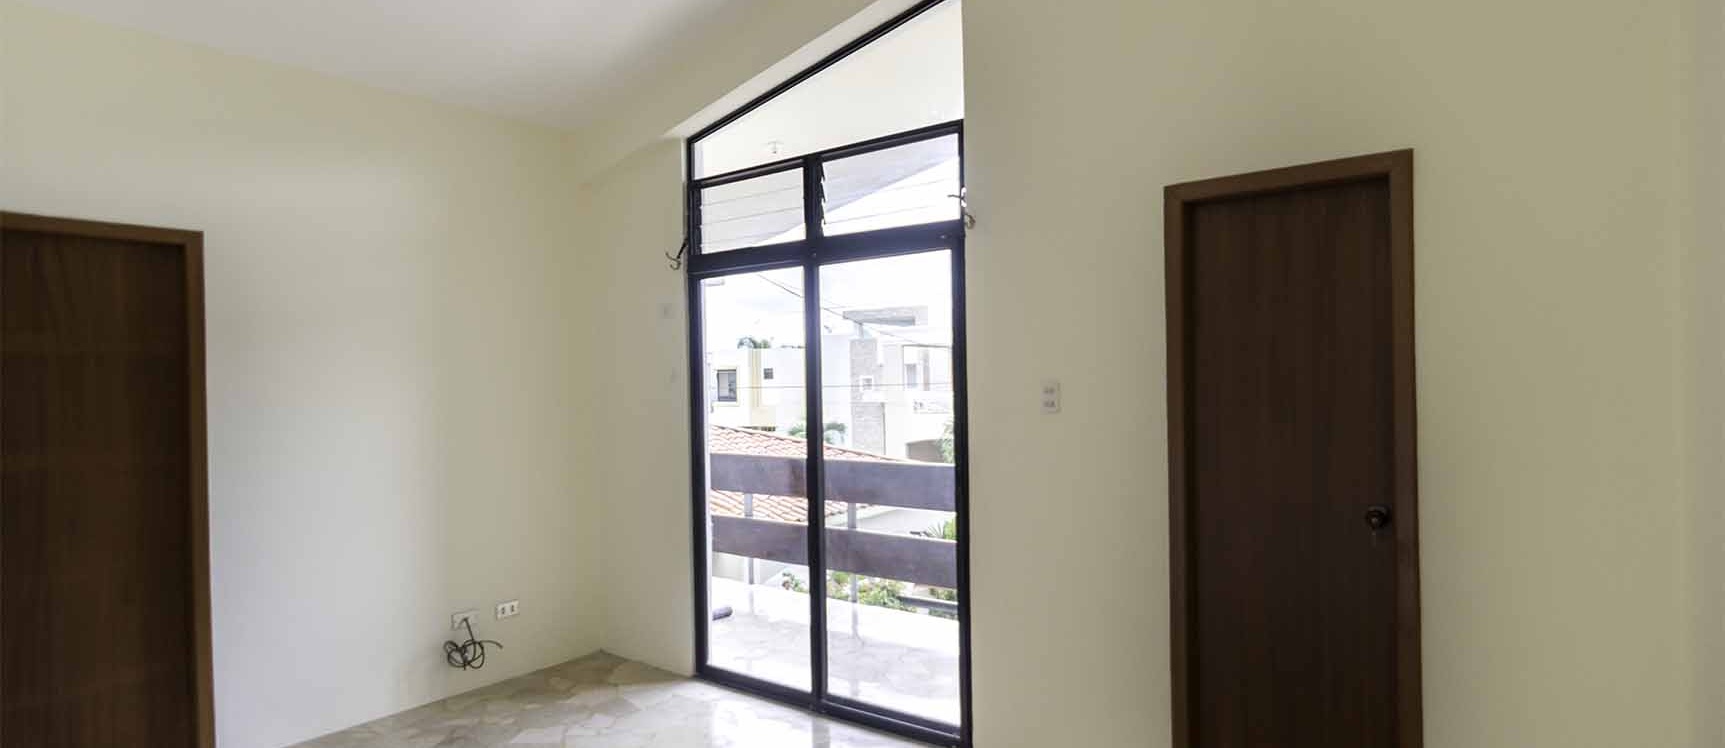 GeoBienes - Casa en alquiler en Urbanización Laguna Club Vía a la Costa  - Plusvalia Guayaquil Casas de venta y alquiler Inmobiliaria Ecuador